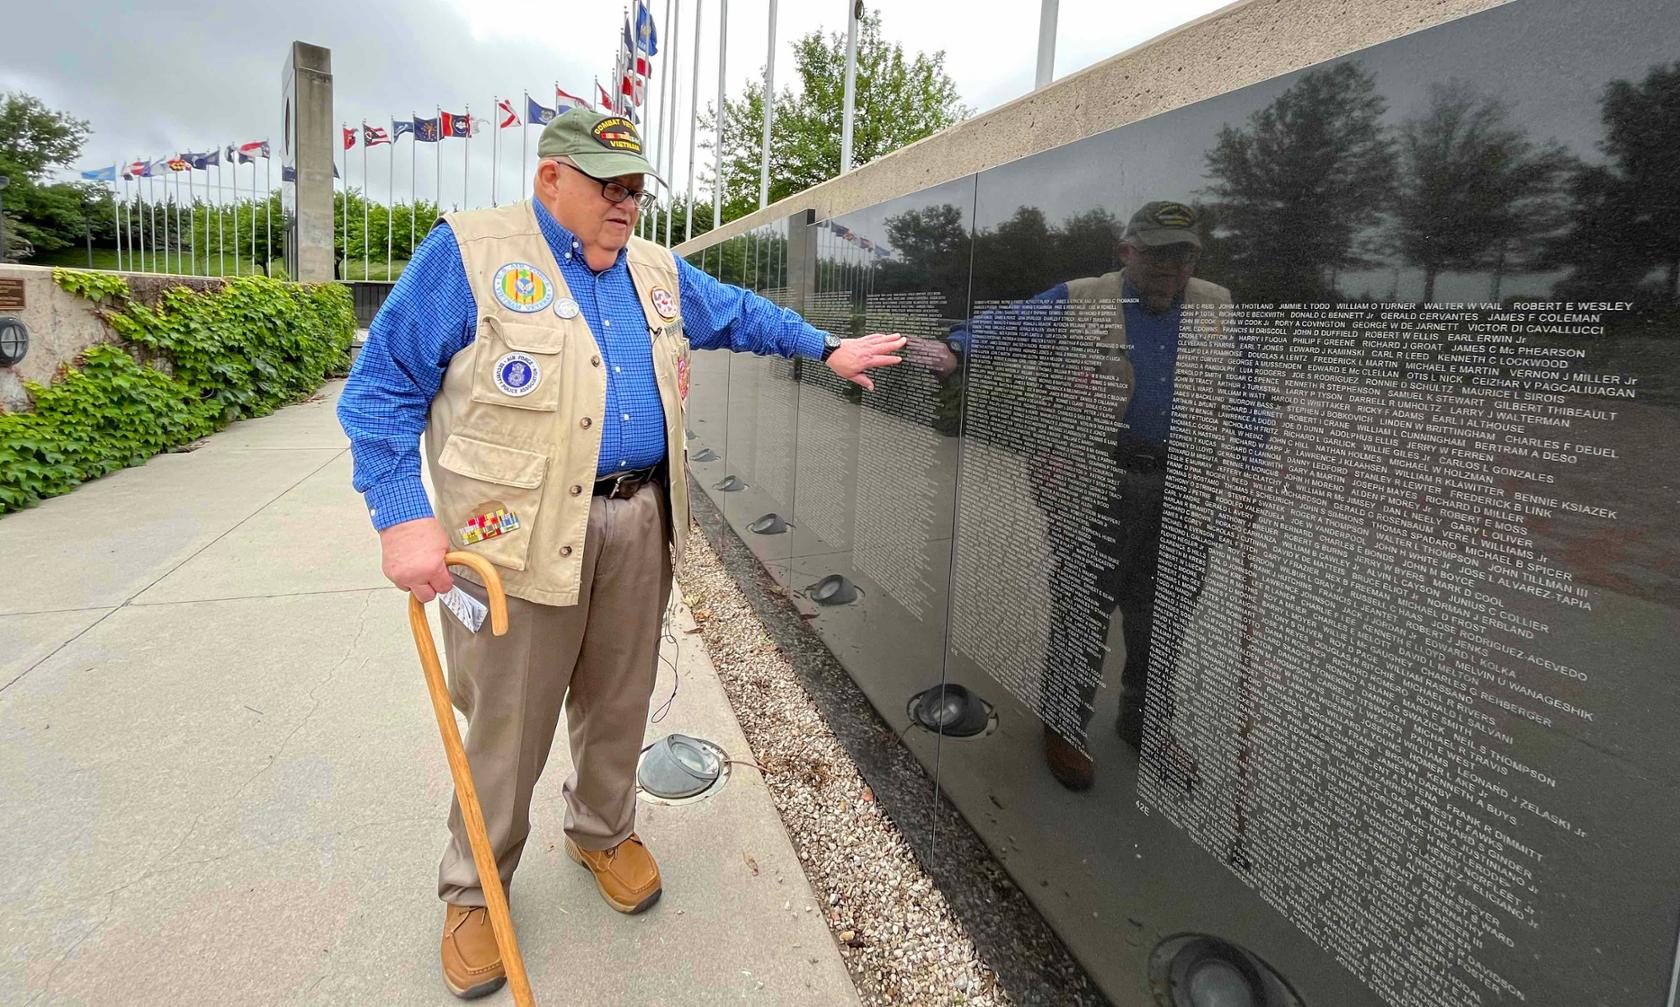 Veterans Memorial and Vietnam Veteran Rick Fulton